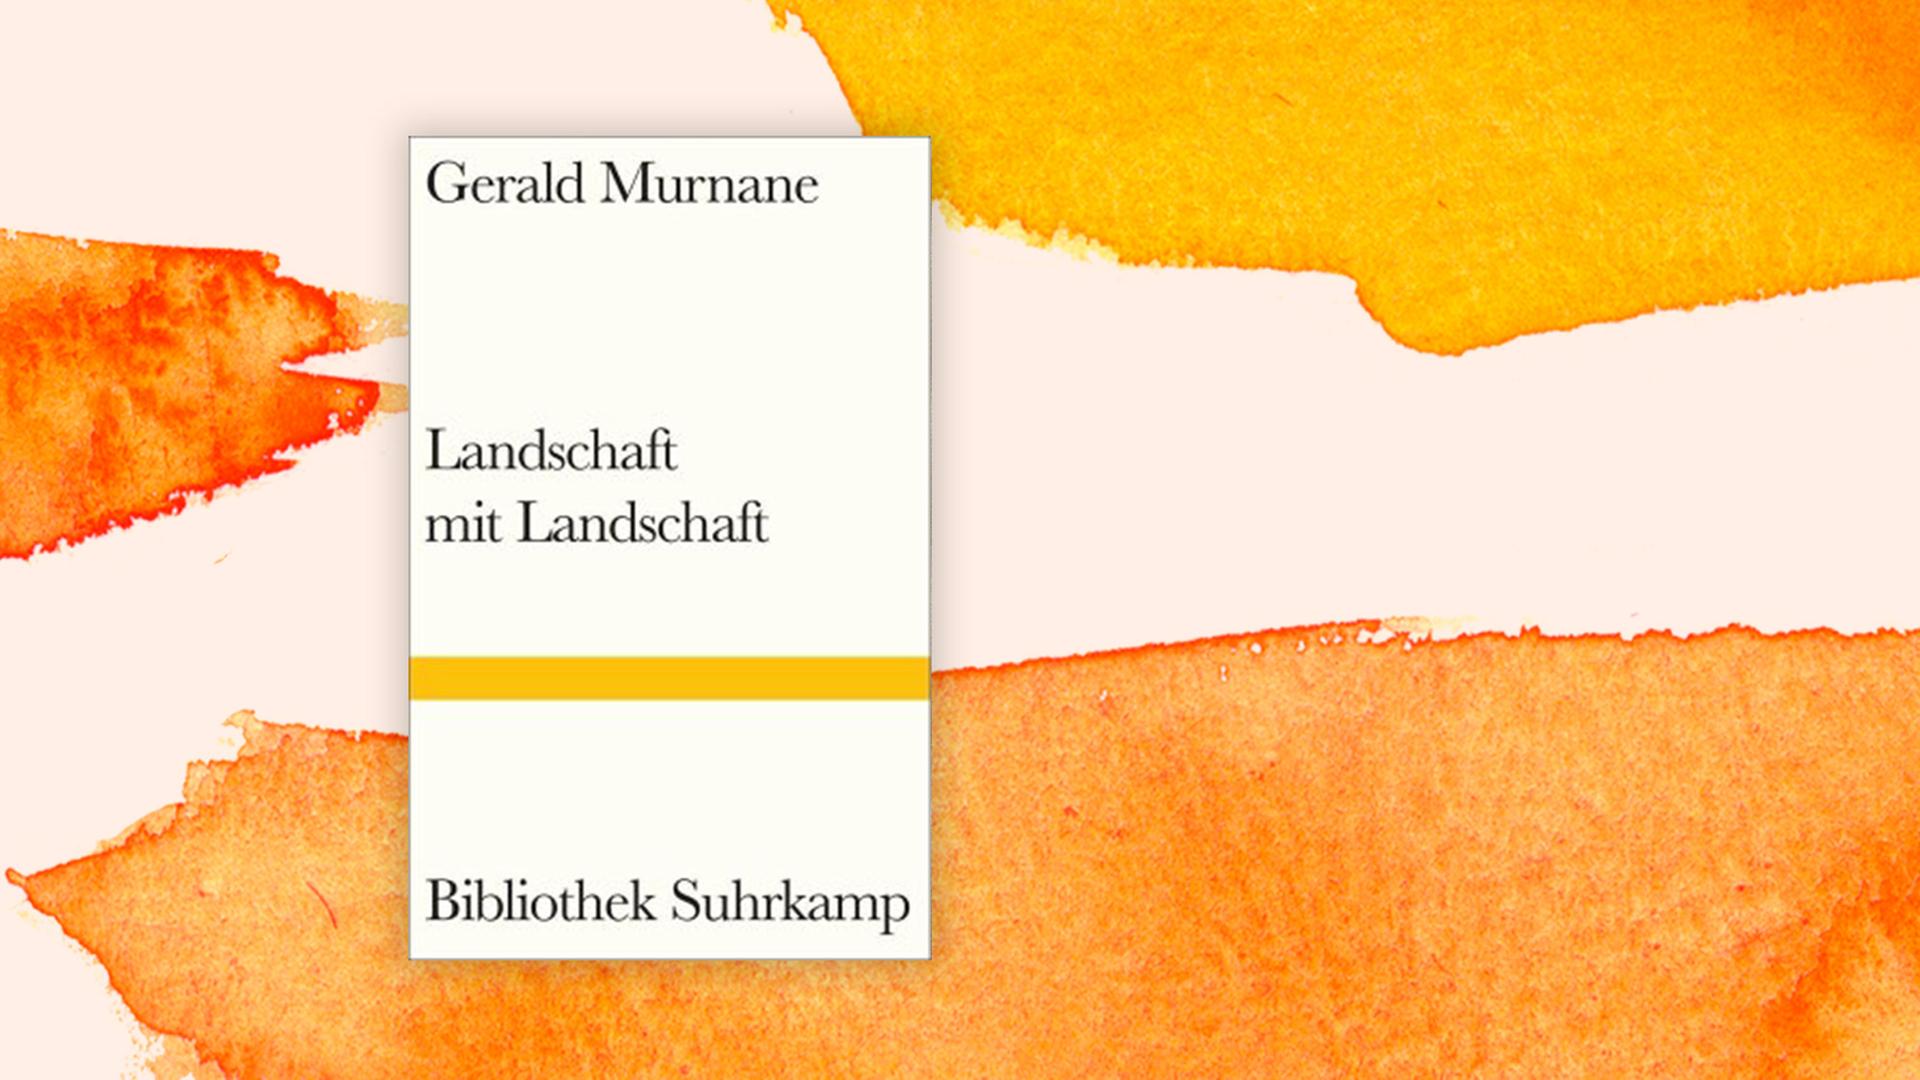 Das Buchcover von Gerald Murnane auf orangefarbenem Hintergrund.